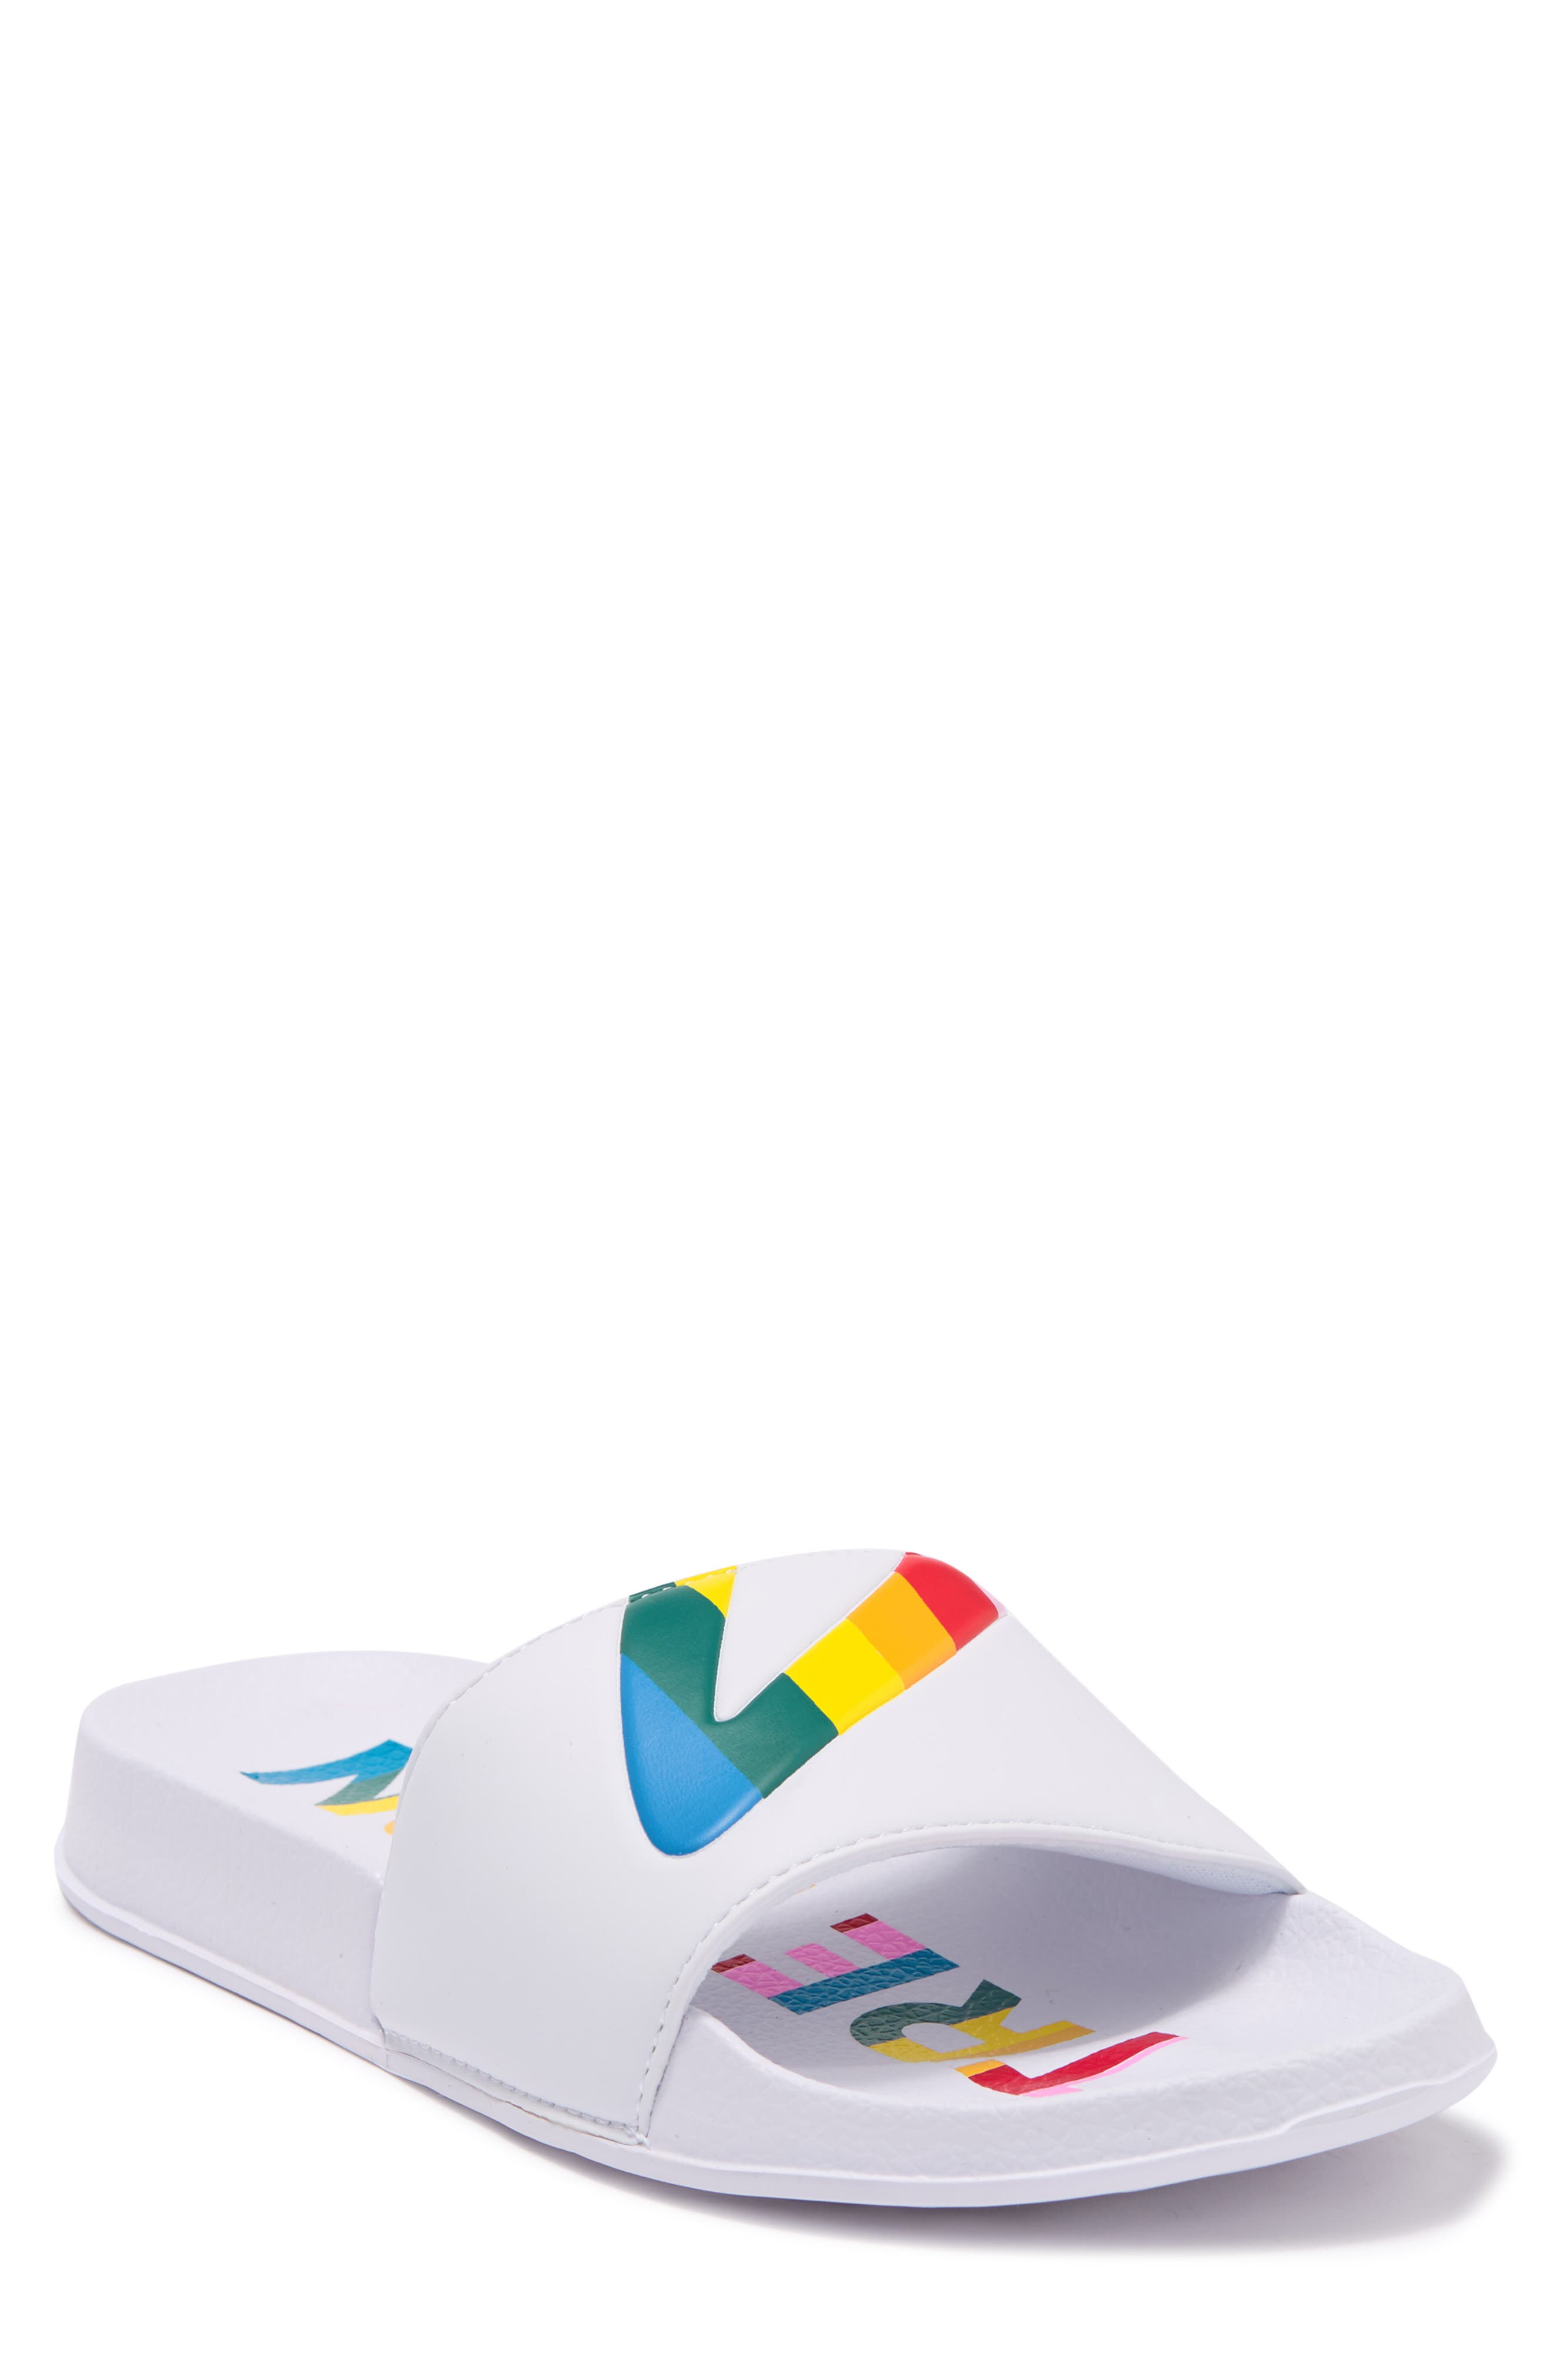 Tretorn Tragrant Slide Sandal In White/rainbow